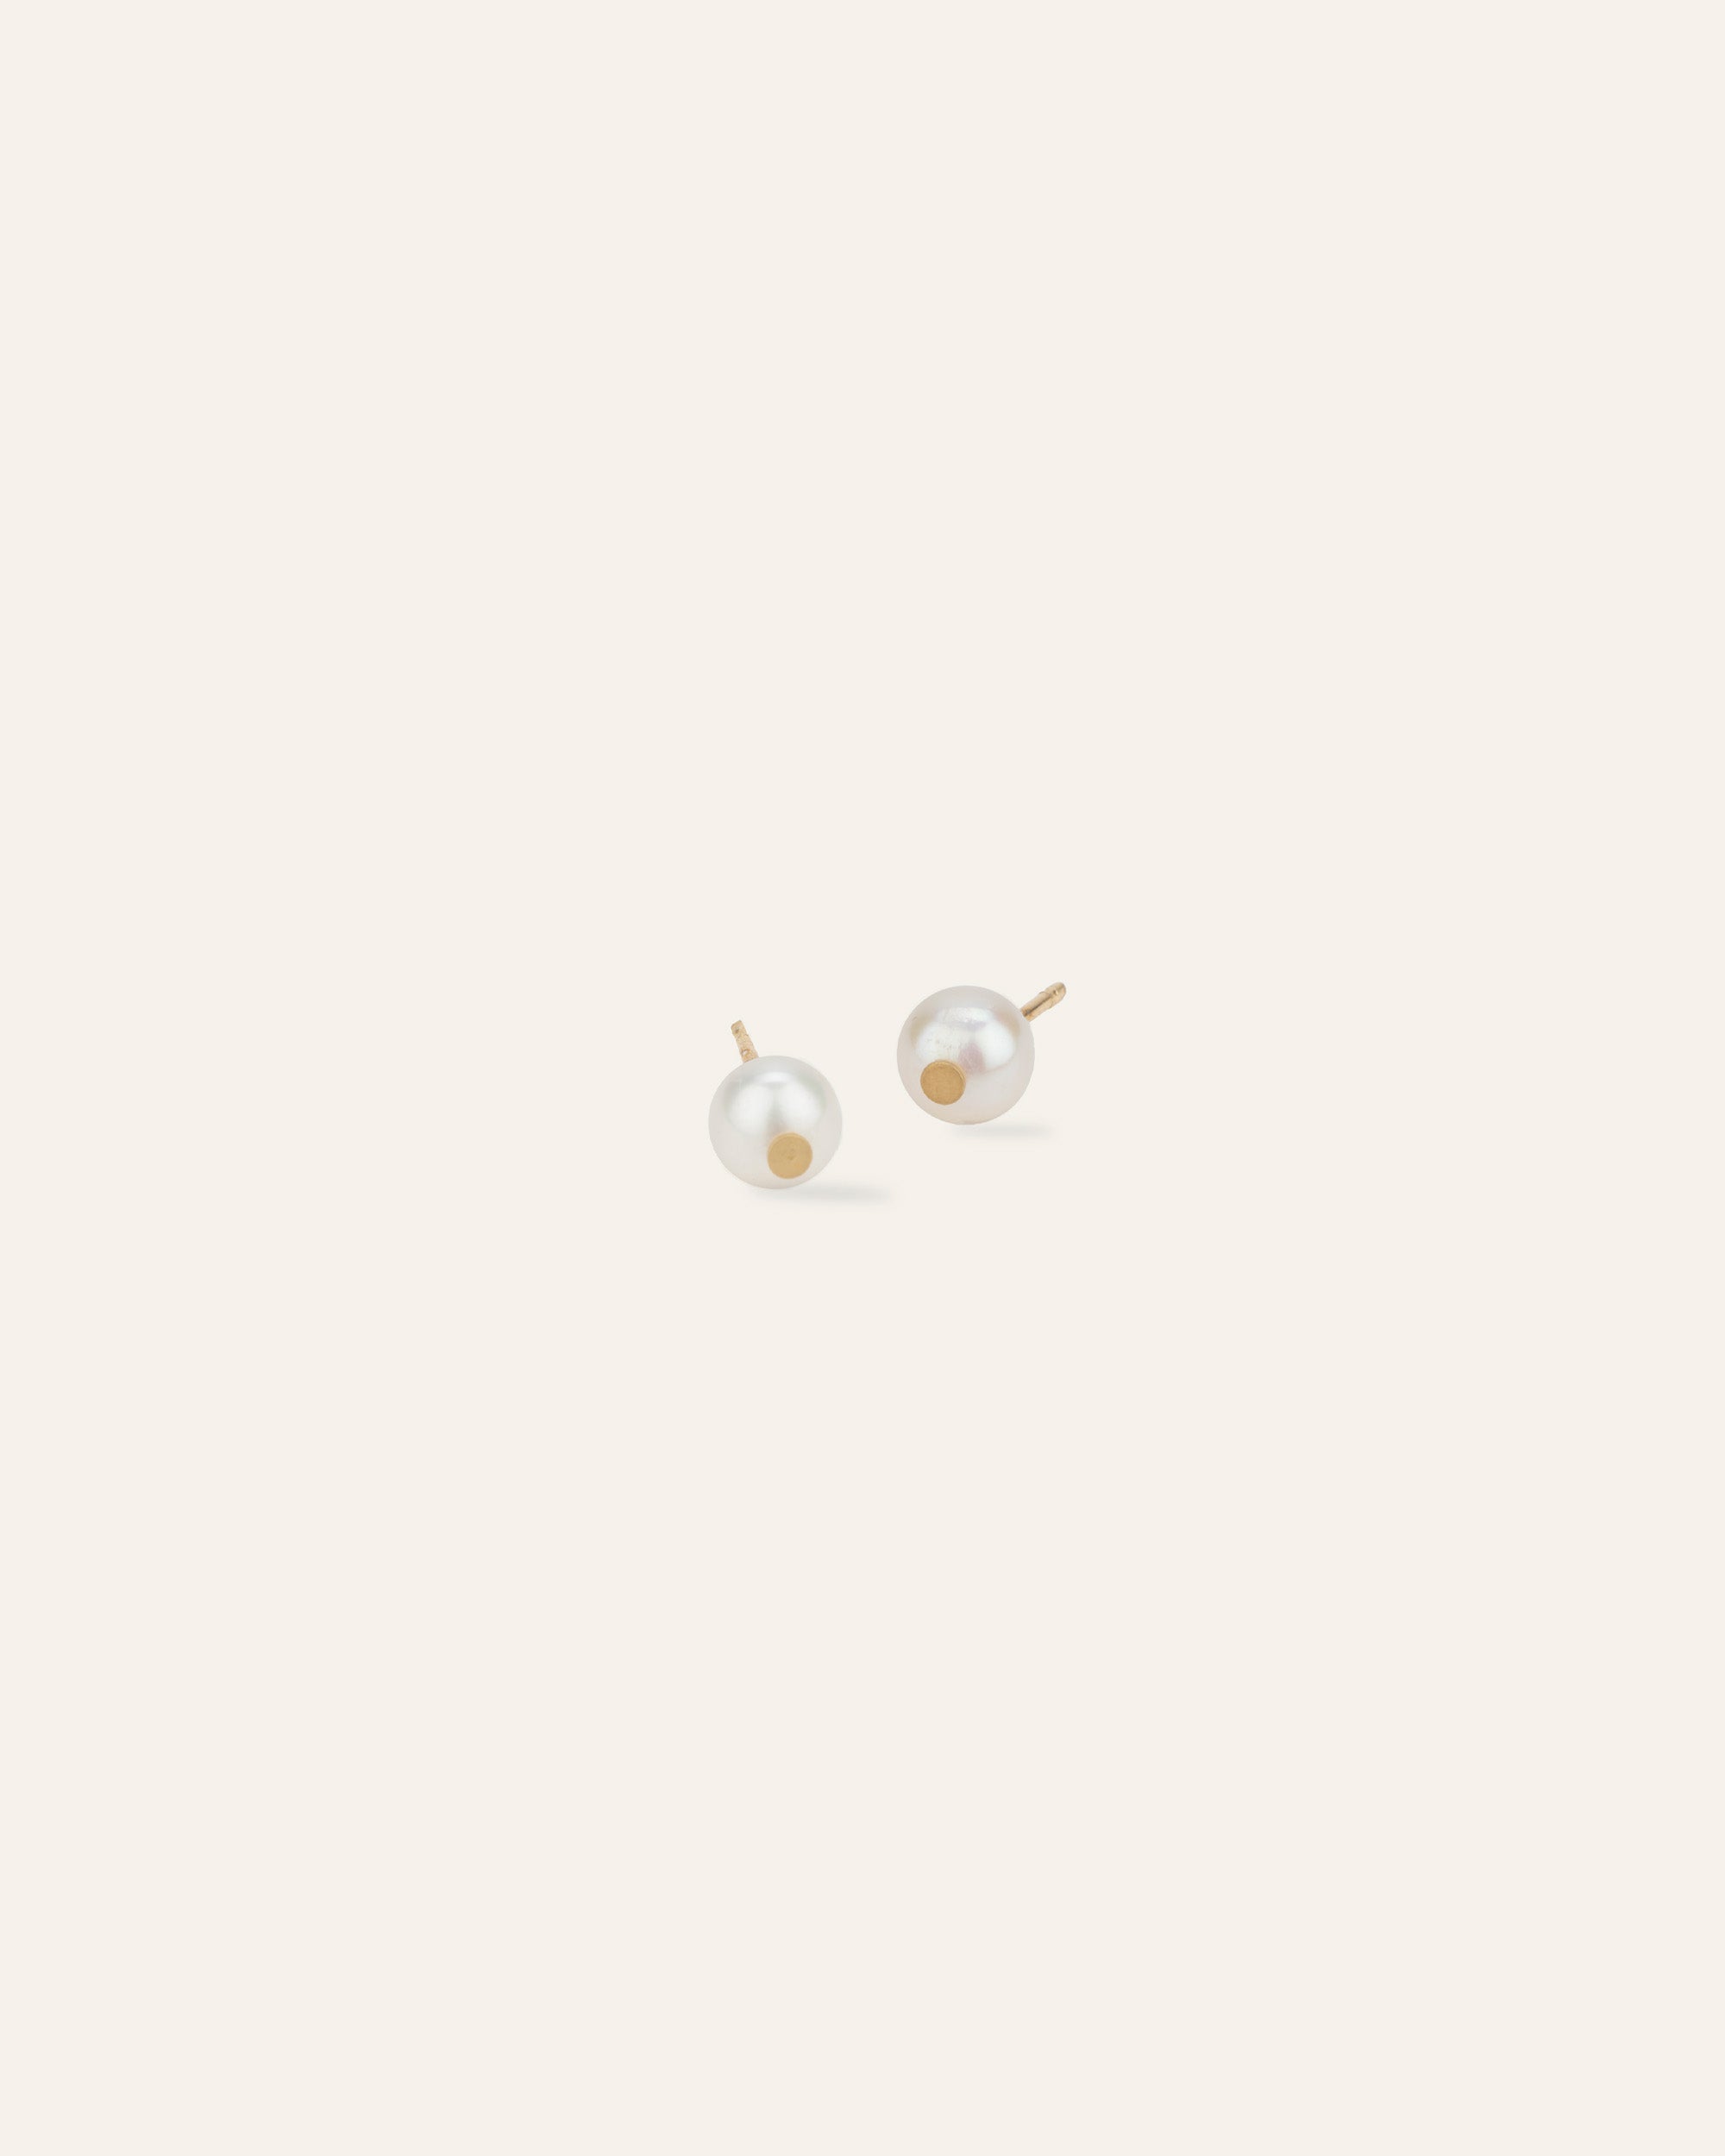 Boucles d'oreilles puces composées d'une perle de culture ronde de 6mm en plaqué or 3 microns made in France.